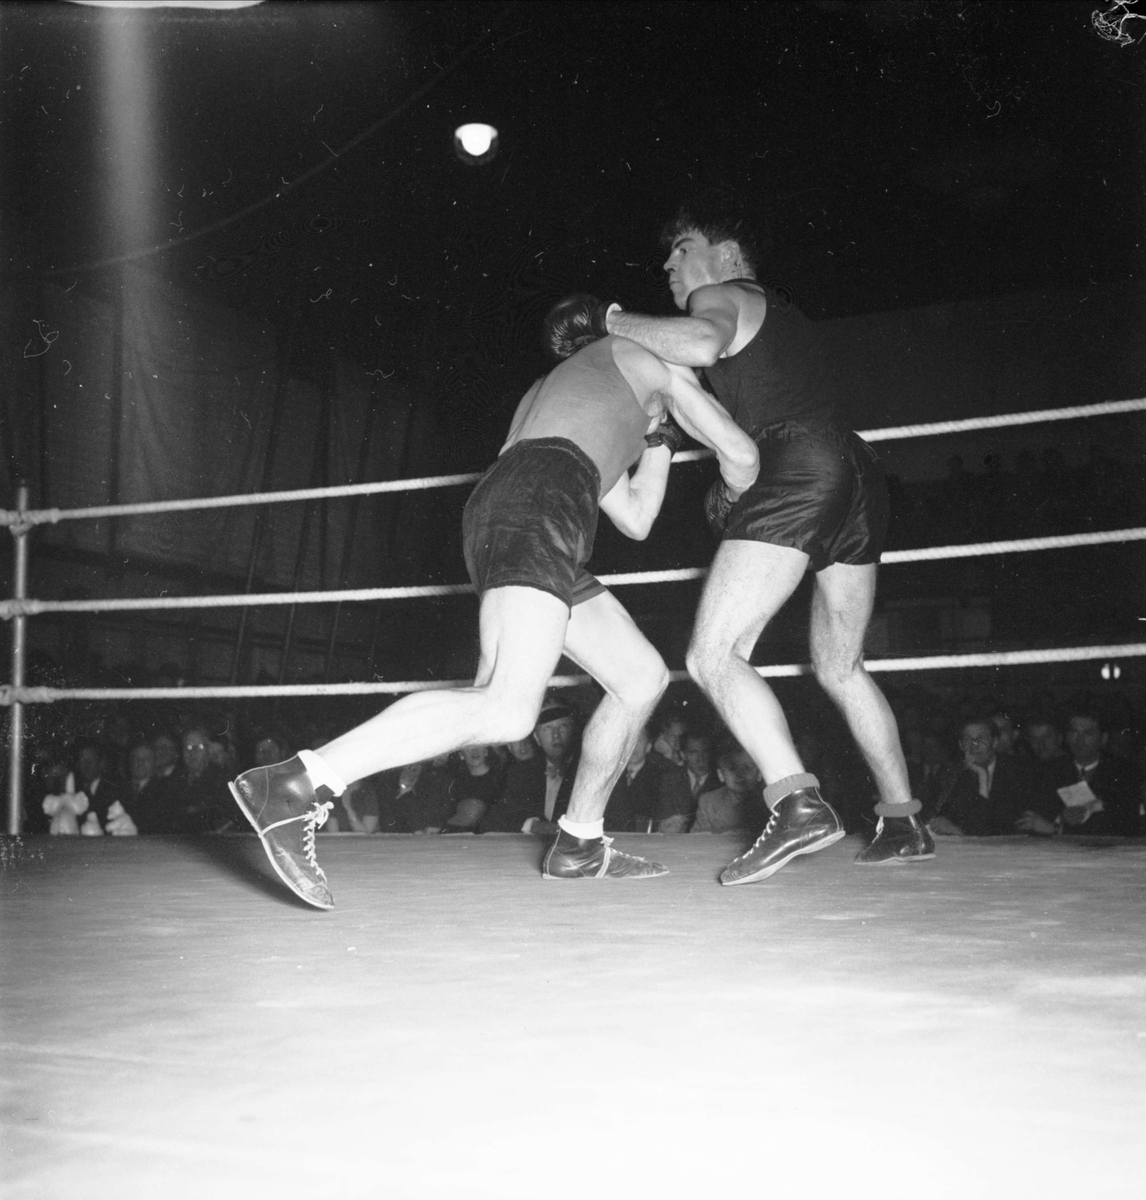 Boxningsmatch - Mellansvenska mästerskapen, Uppsala 1948